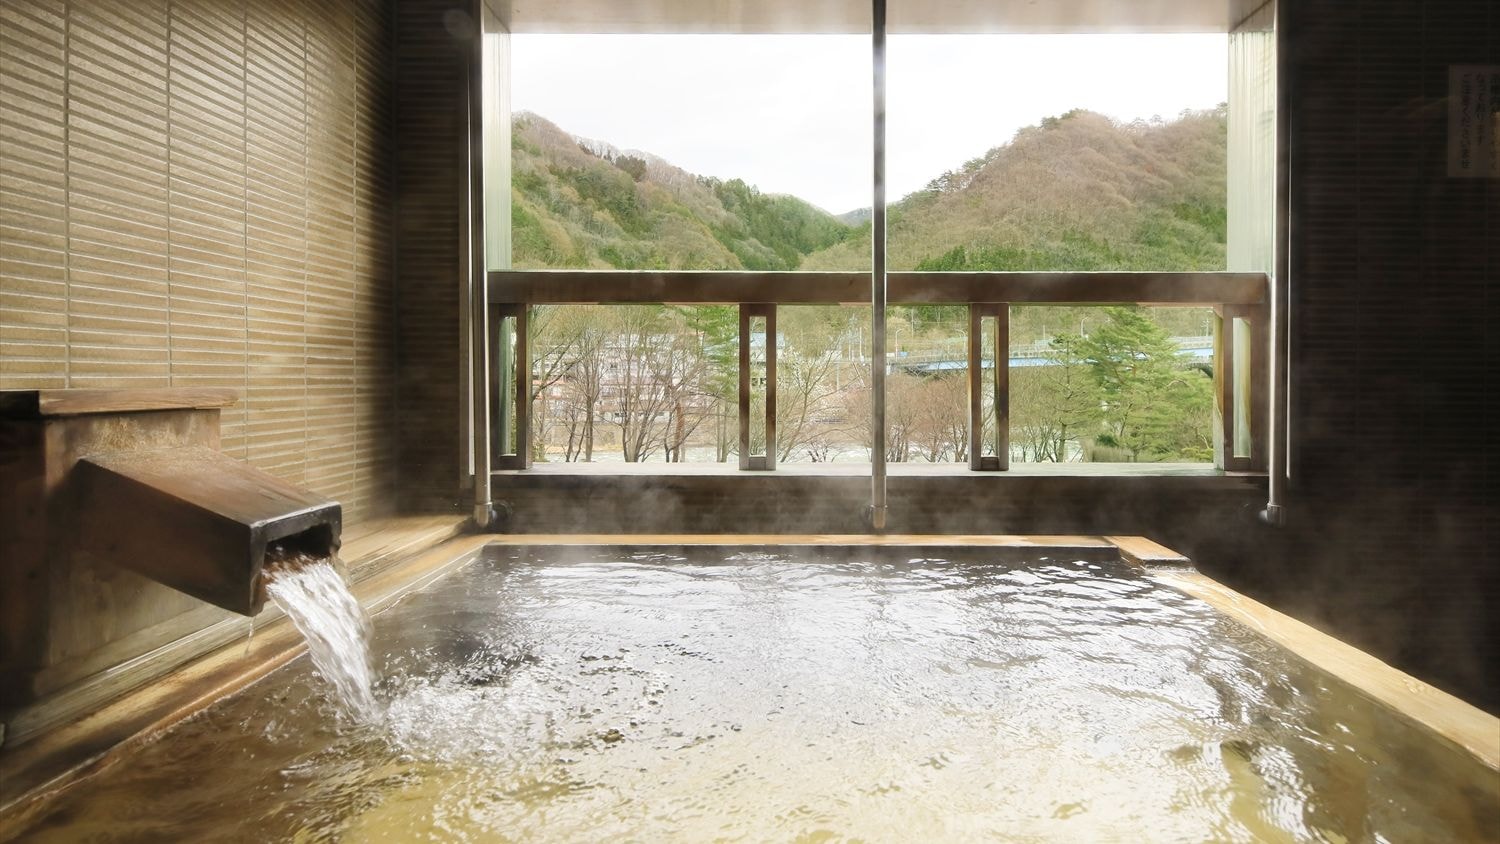 [带露天浴池的房间、禁烟] 100%天然温泉 带露天浴池的日西合璧房间